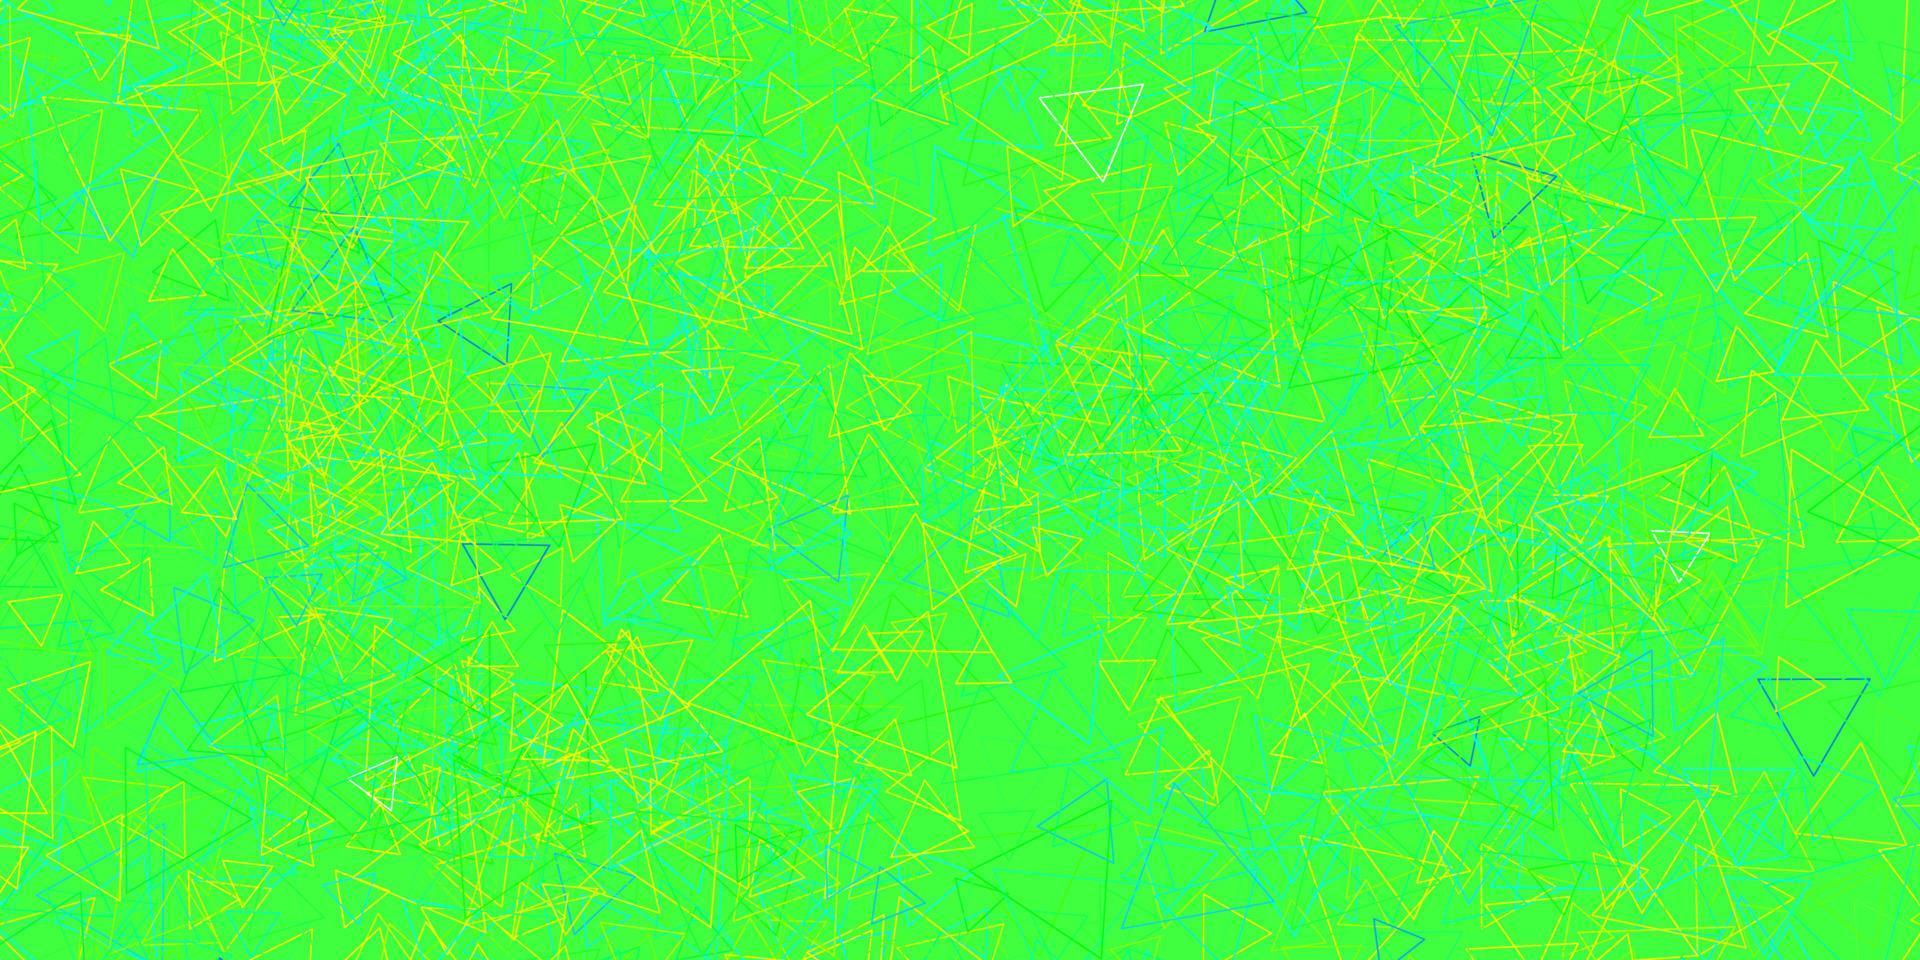 patrón de vector azul claro, amarillo con formas poligonales.